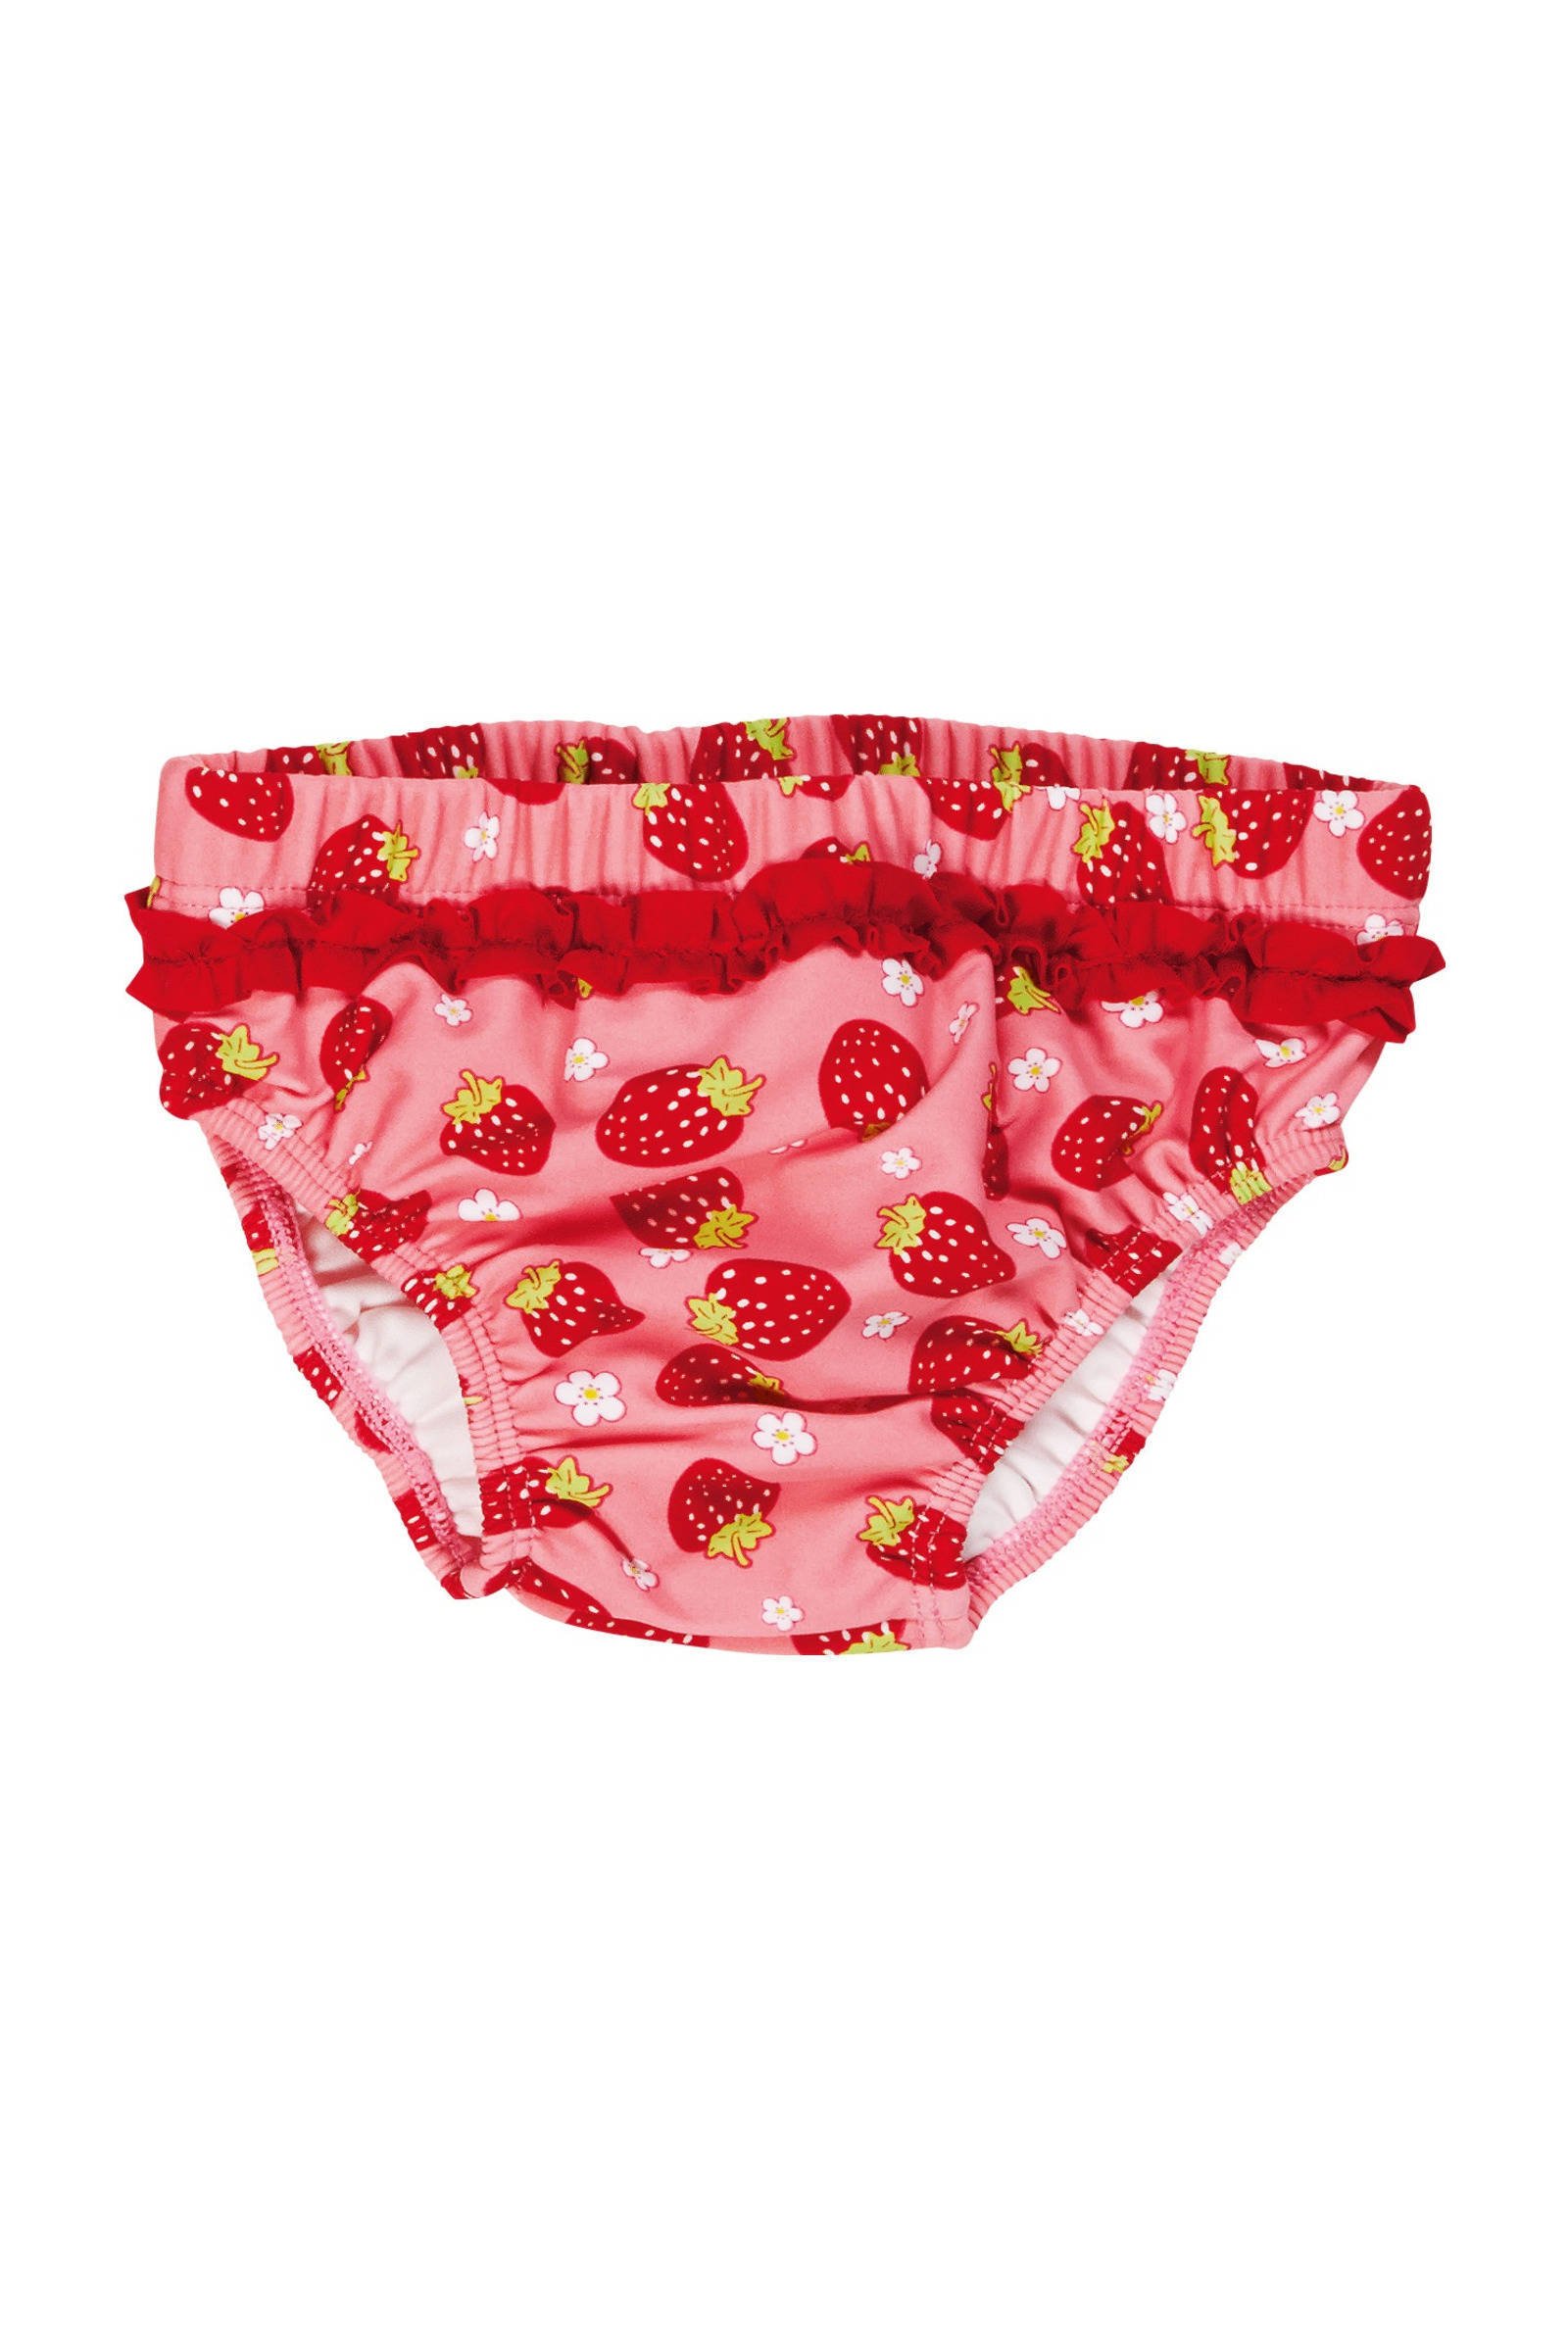 Playshoes zwemluier UV werend roze met aardbeien maat 62/68 online kopen